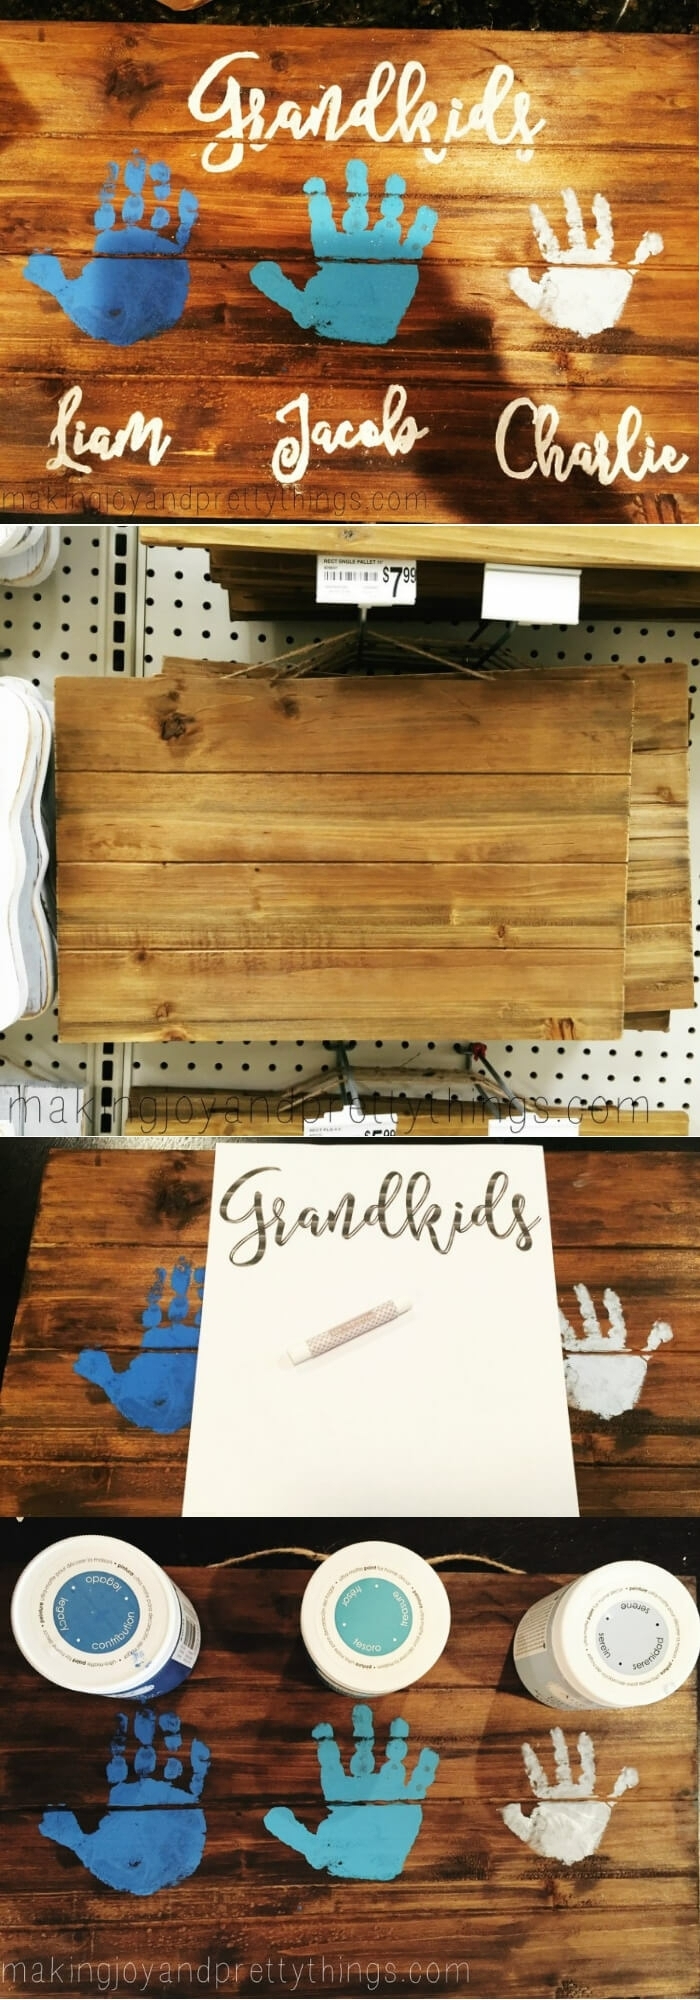 Geschenke für Großeltern von Enkeln, Handabdrücke von Kindern auf Holzbrett in blau und weiß, DIY Anleitung